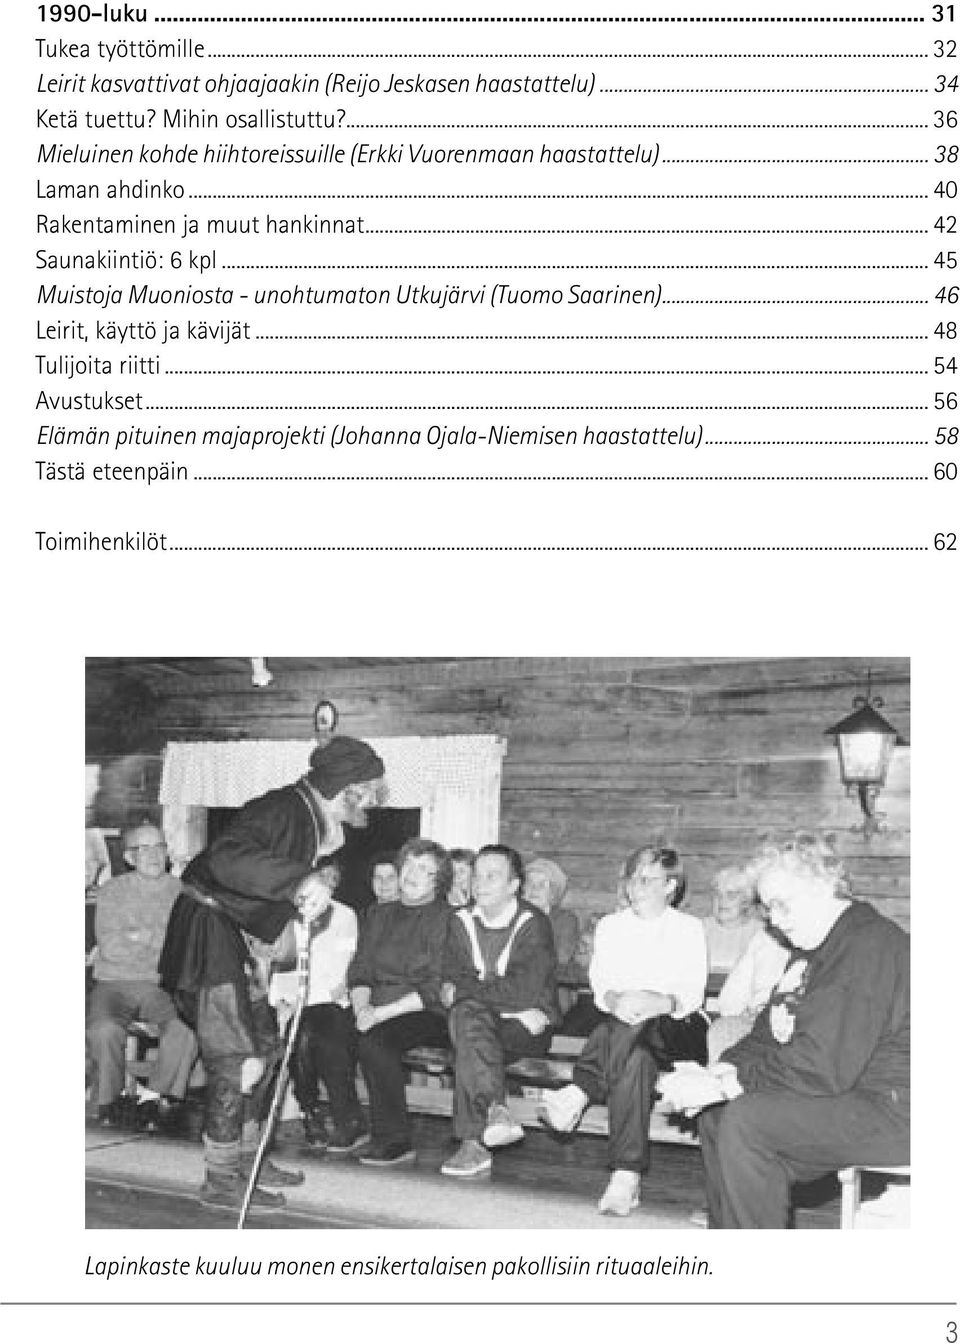 .. 45 Muistoja Muoniosta - unohtumaton Utkujärvi (Tuomo Saarinen)... 46 Leirit, käyttö ja kävijät... 48 Tulijoita riitti... 54 Avustukset.